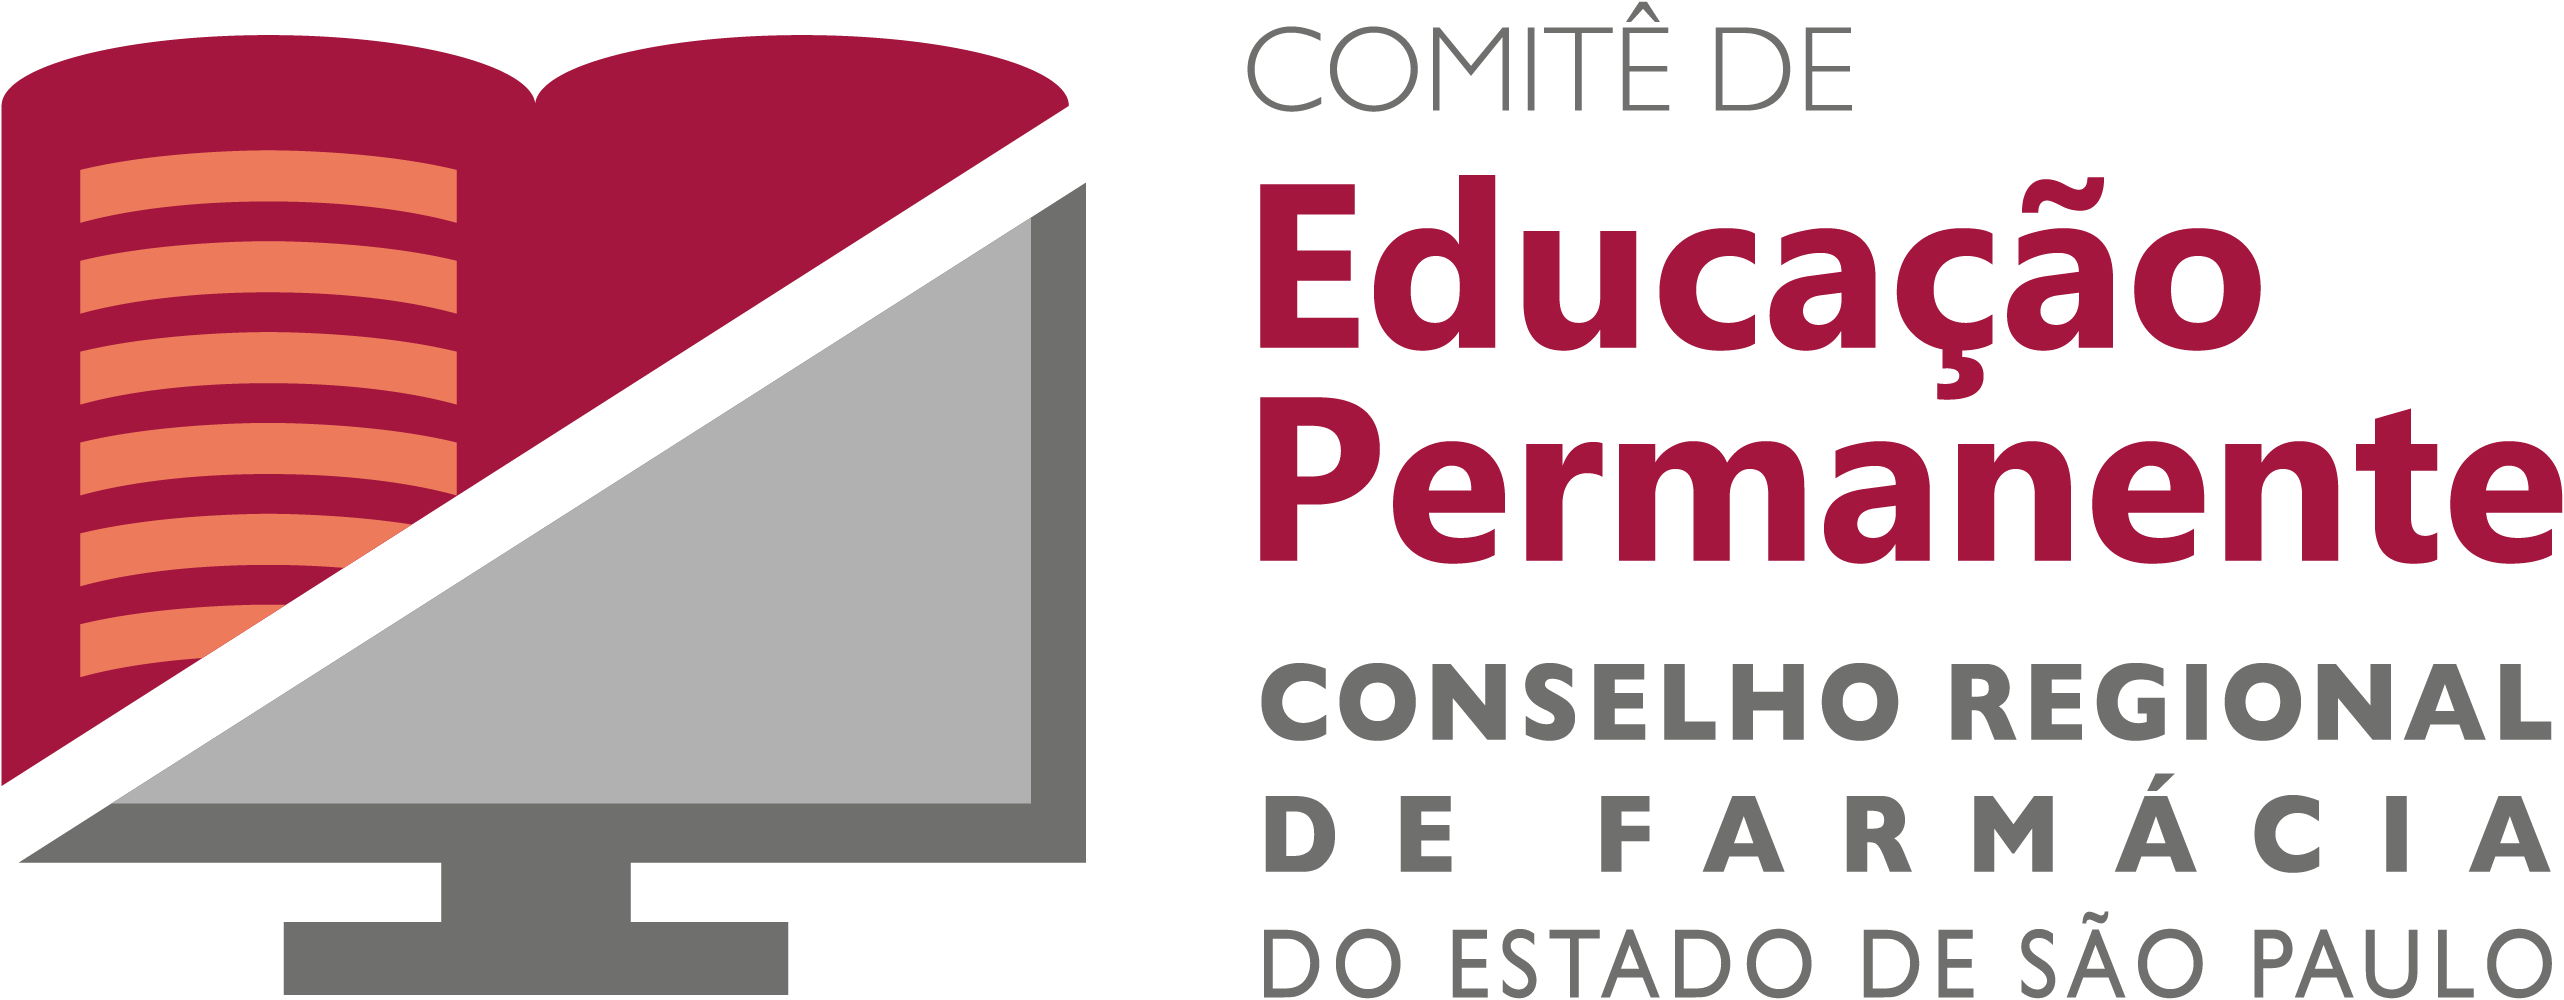 Comitê de Educação Permanente